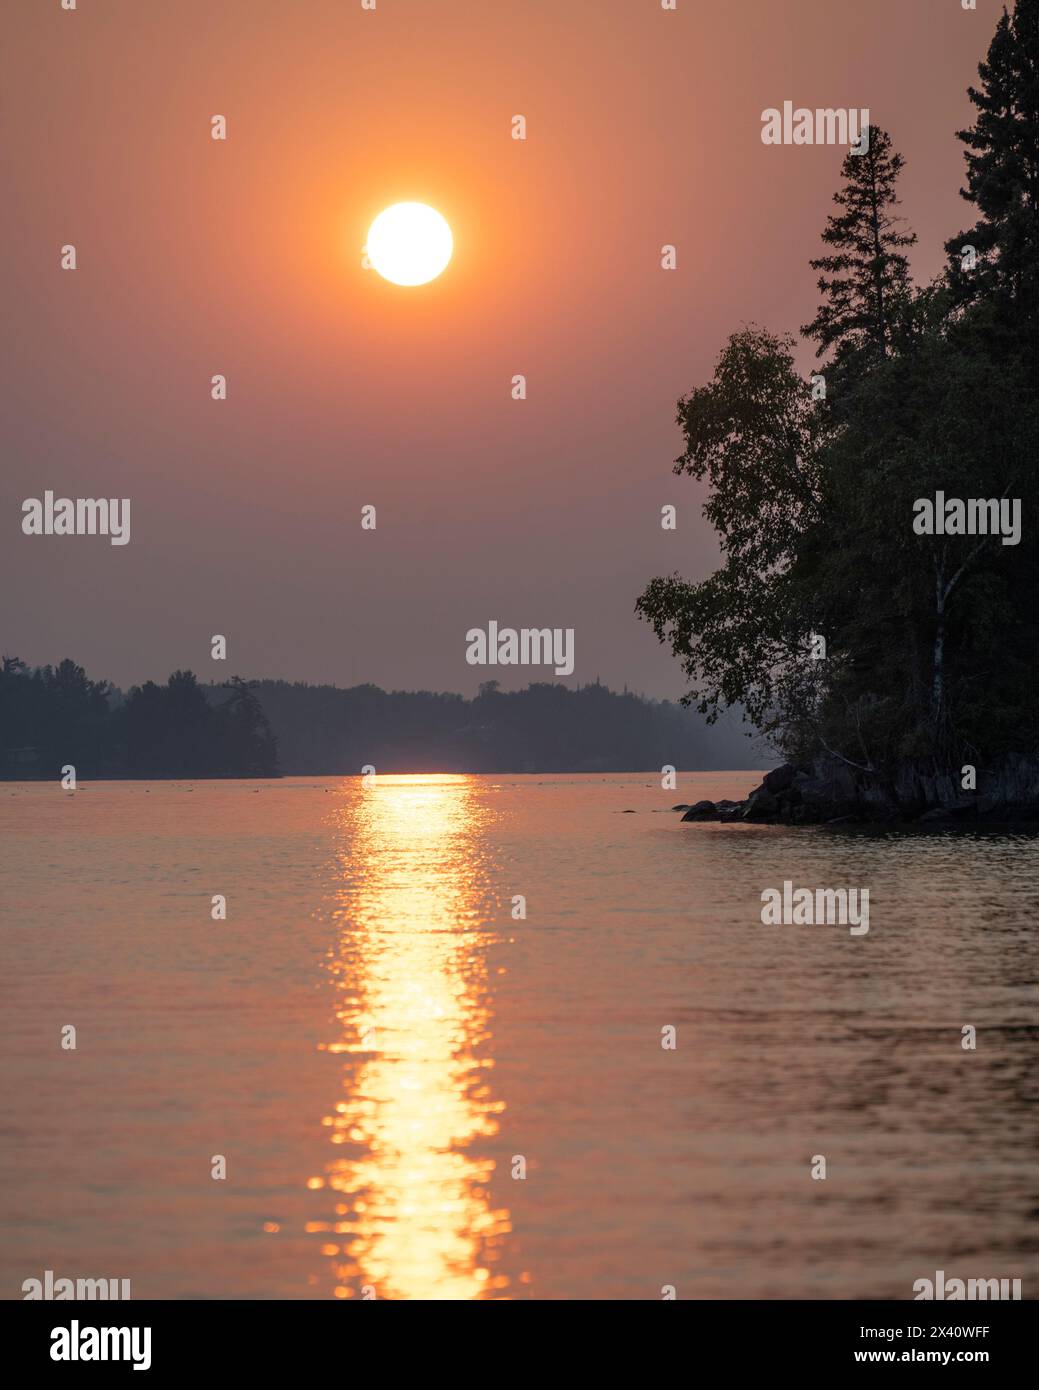 Spectaculaire coucher de soleil sur un lac avec des arbres silhouettes le long du rivage et un rayon de soleil réfléchi sur la surface de l'eau Banque D'Images